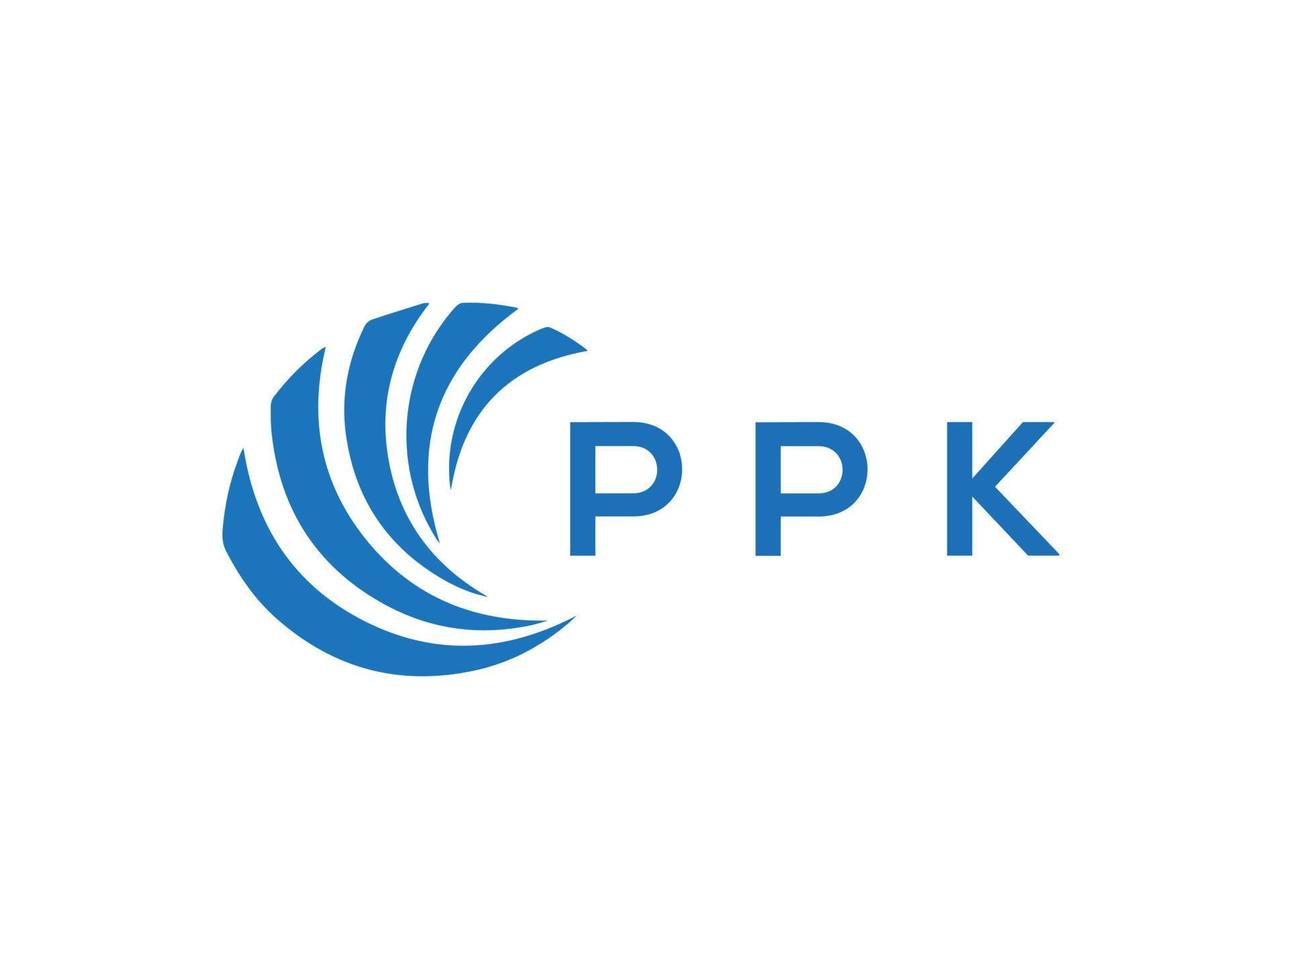 PPK letter logo design on white background. PPK creative circle letter logo concept. PPK letter design. vector